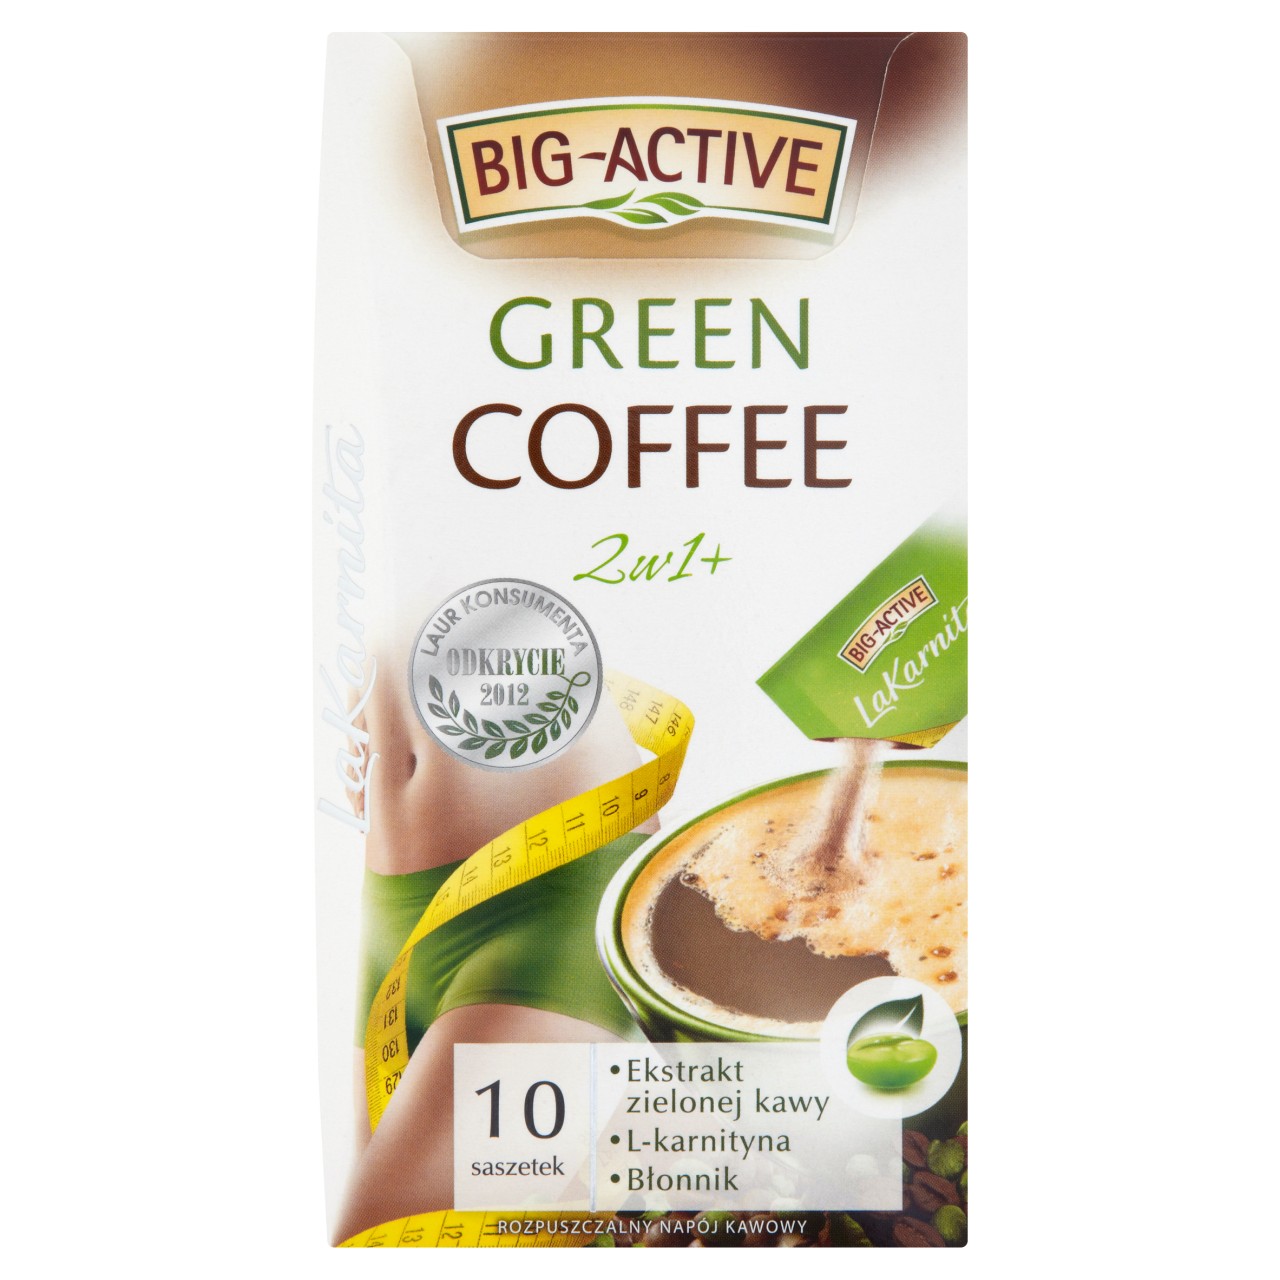 Big-Active La Karnita Green Coffee 2w1+ Rozpuszczalny napój kawowy 120 g (10 saszetek)